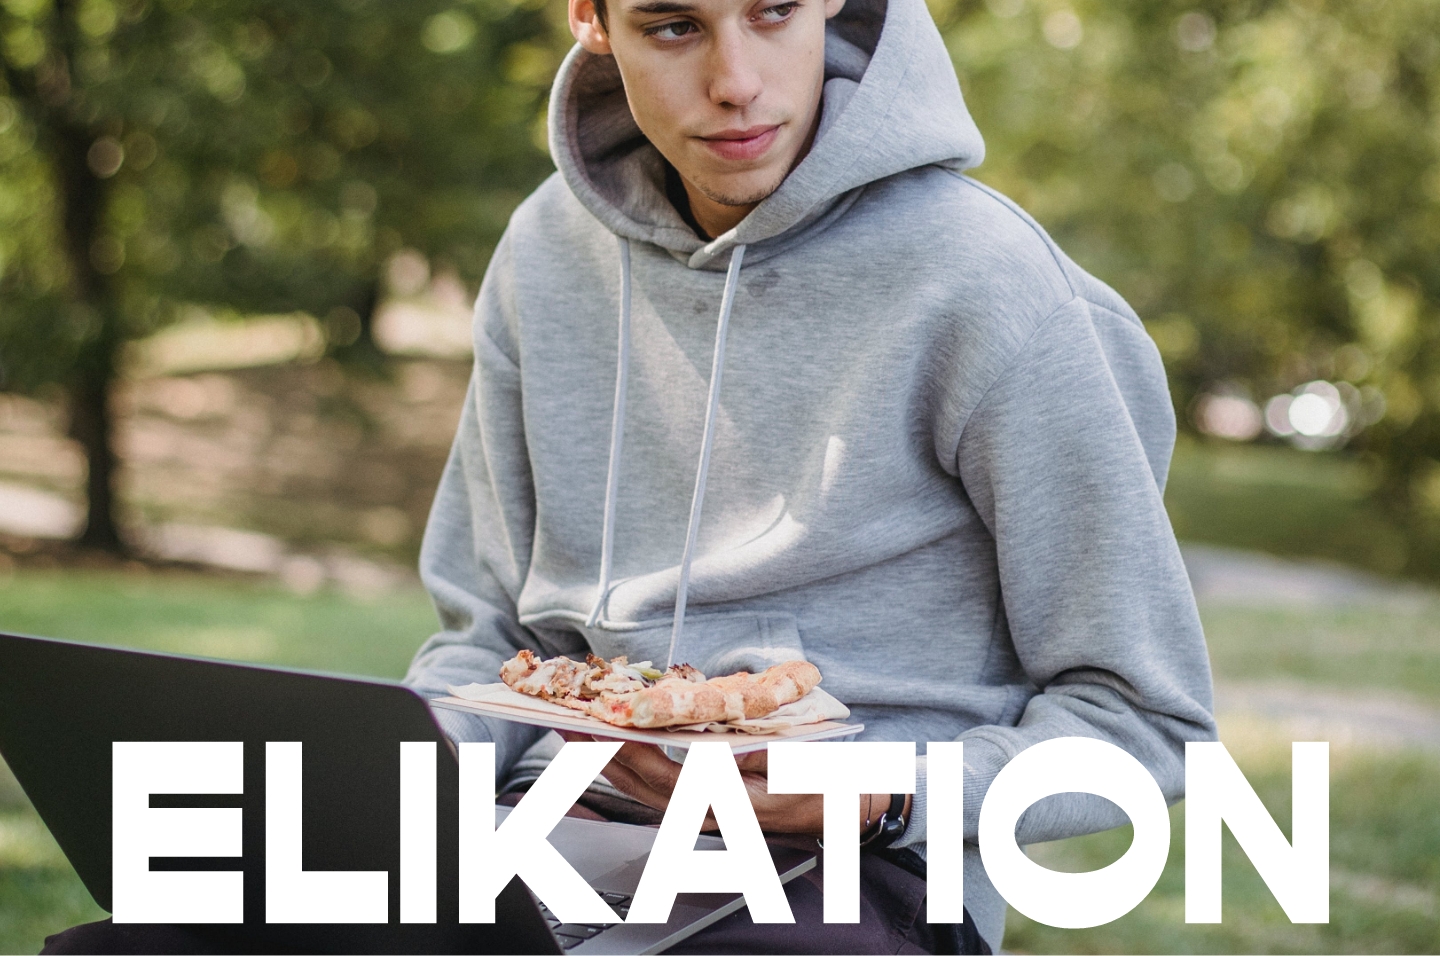 Elikation, promoviendo un modelo de alimentación más saludable y sostenible en la juventud vasca